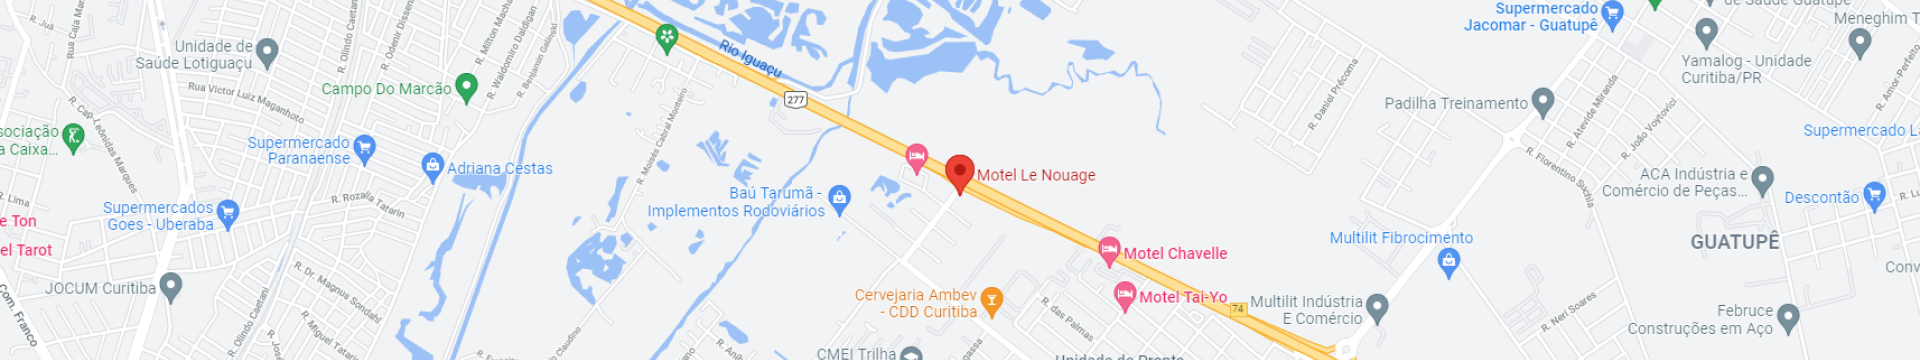 Mapa do Motel Le Nouage